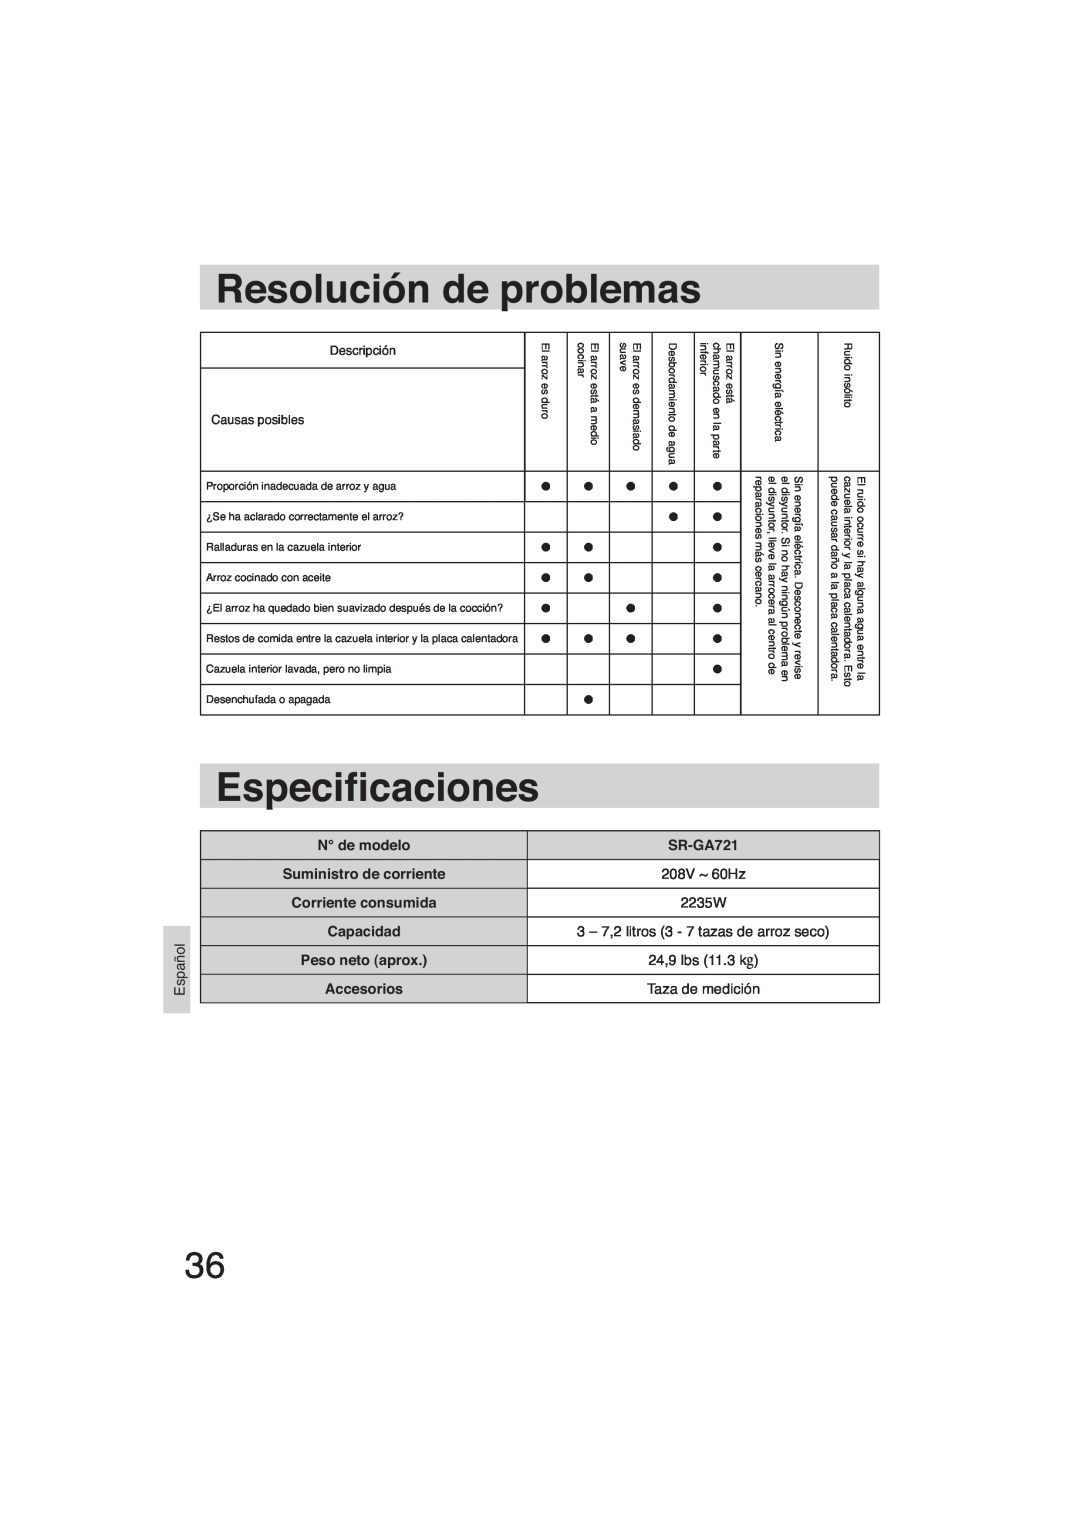 Panasonic SR-GA721 Resolución de problemas, Especi caciones, N de modelo, 2235W, Suministro de corriente, 208V ~ 60Hz 